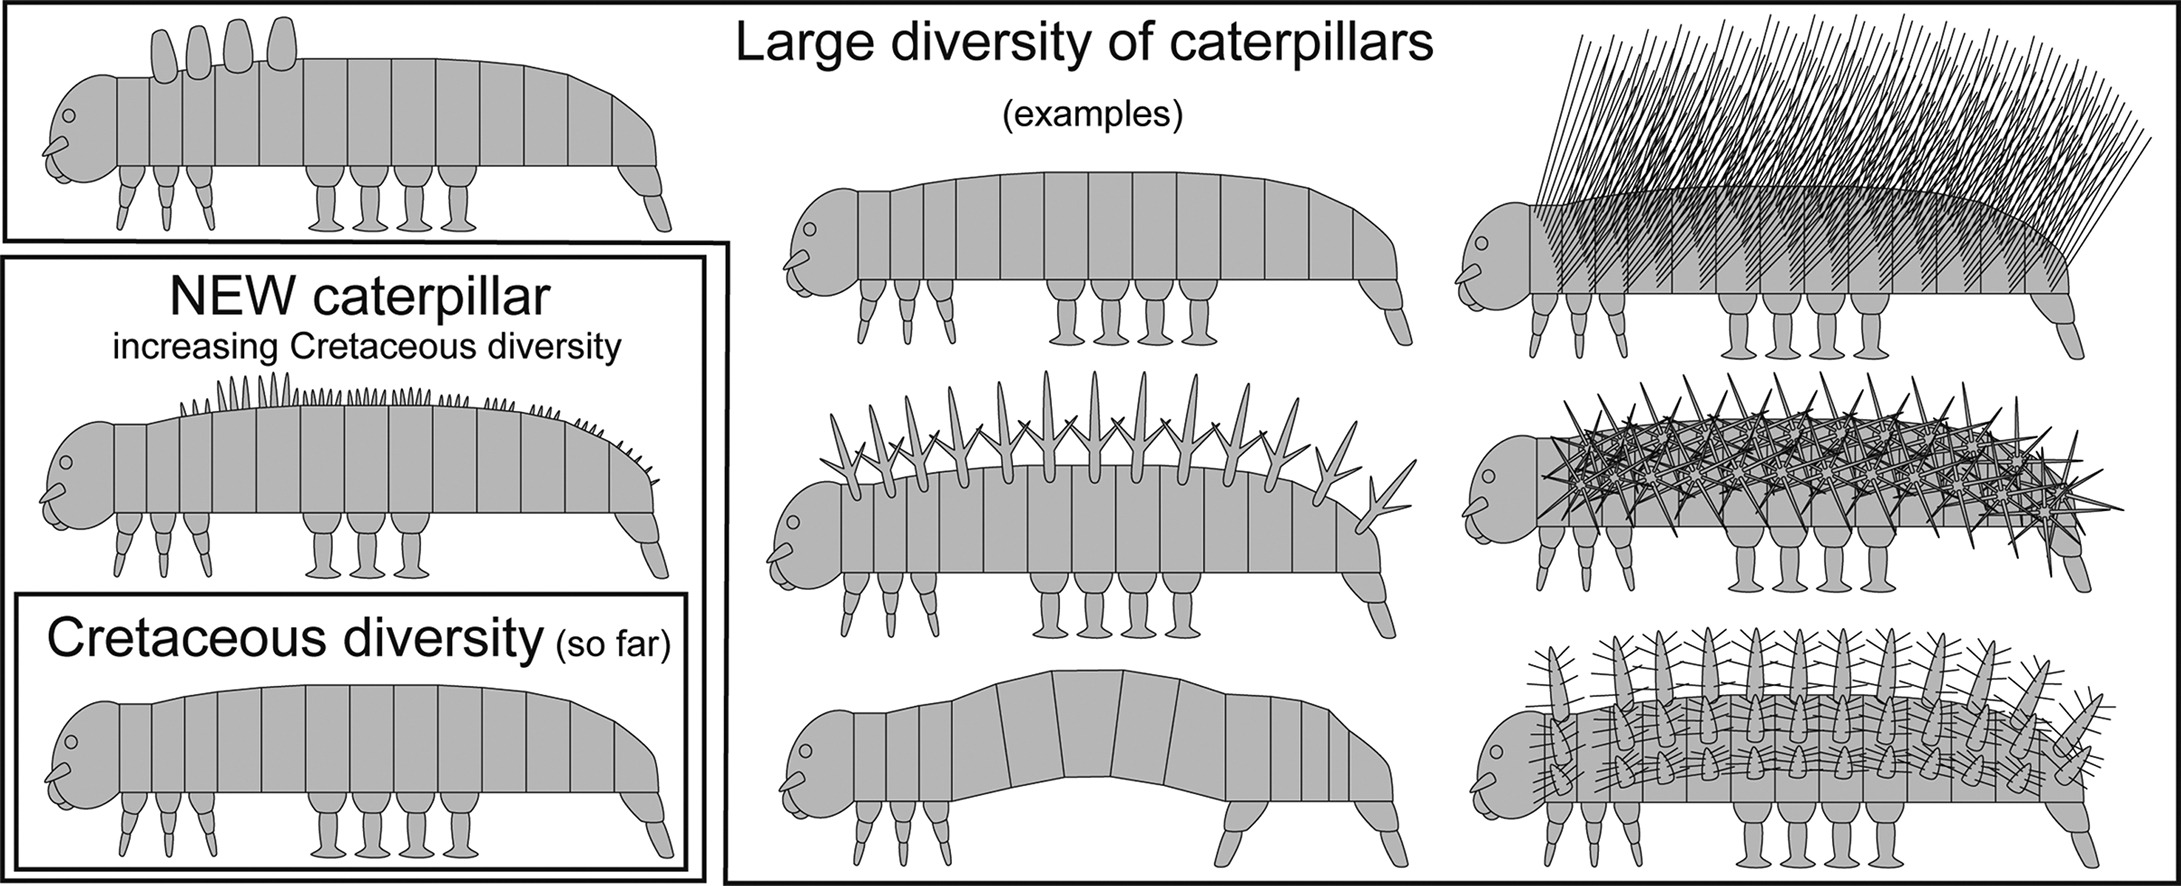 Різноманітна будова тіла гусениць. Зліва внизу виділена будова тіла гусениць крейдового періоду та нова знайдена копалина. Joachim Haug, Carolin Haug